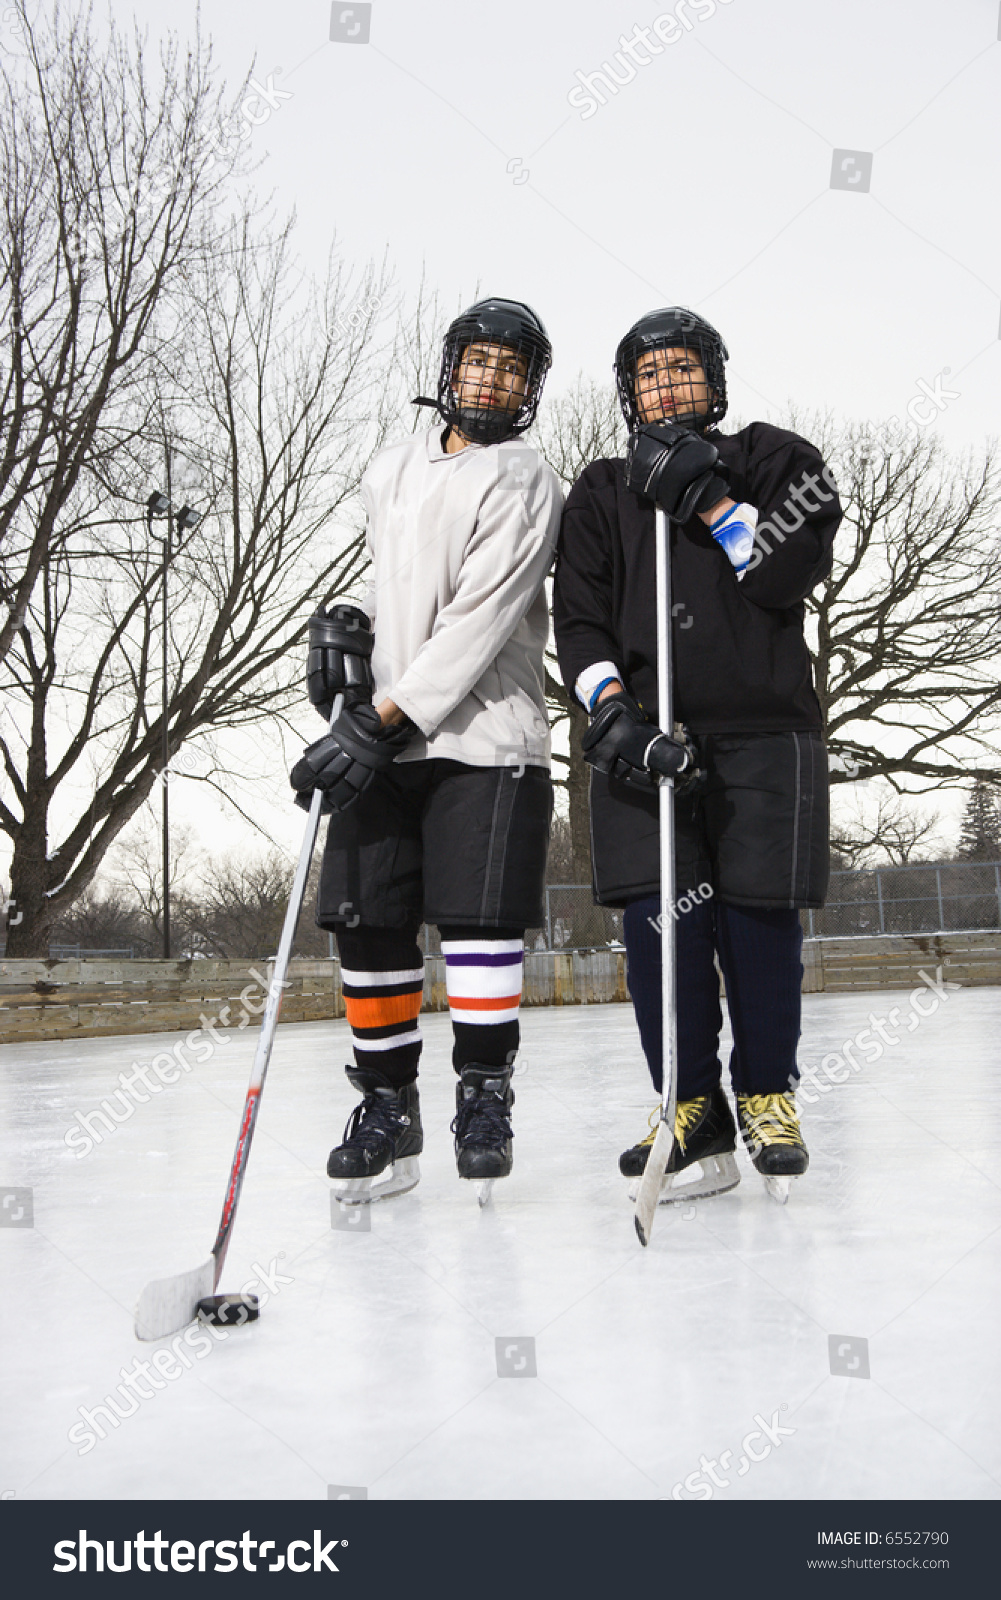 boys ice hockey skates